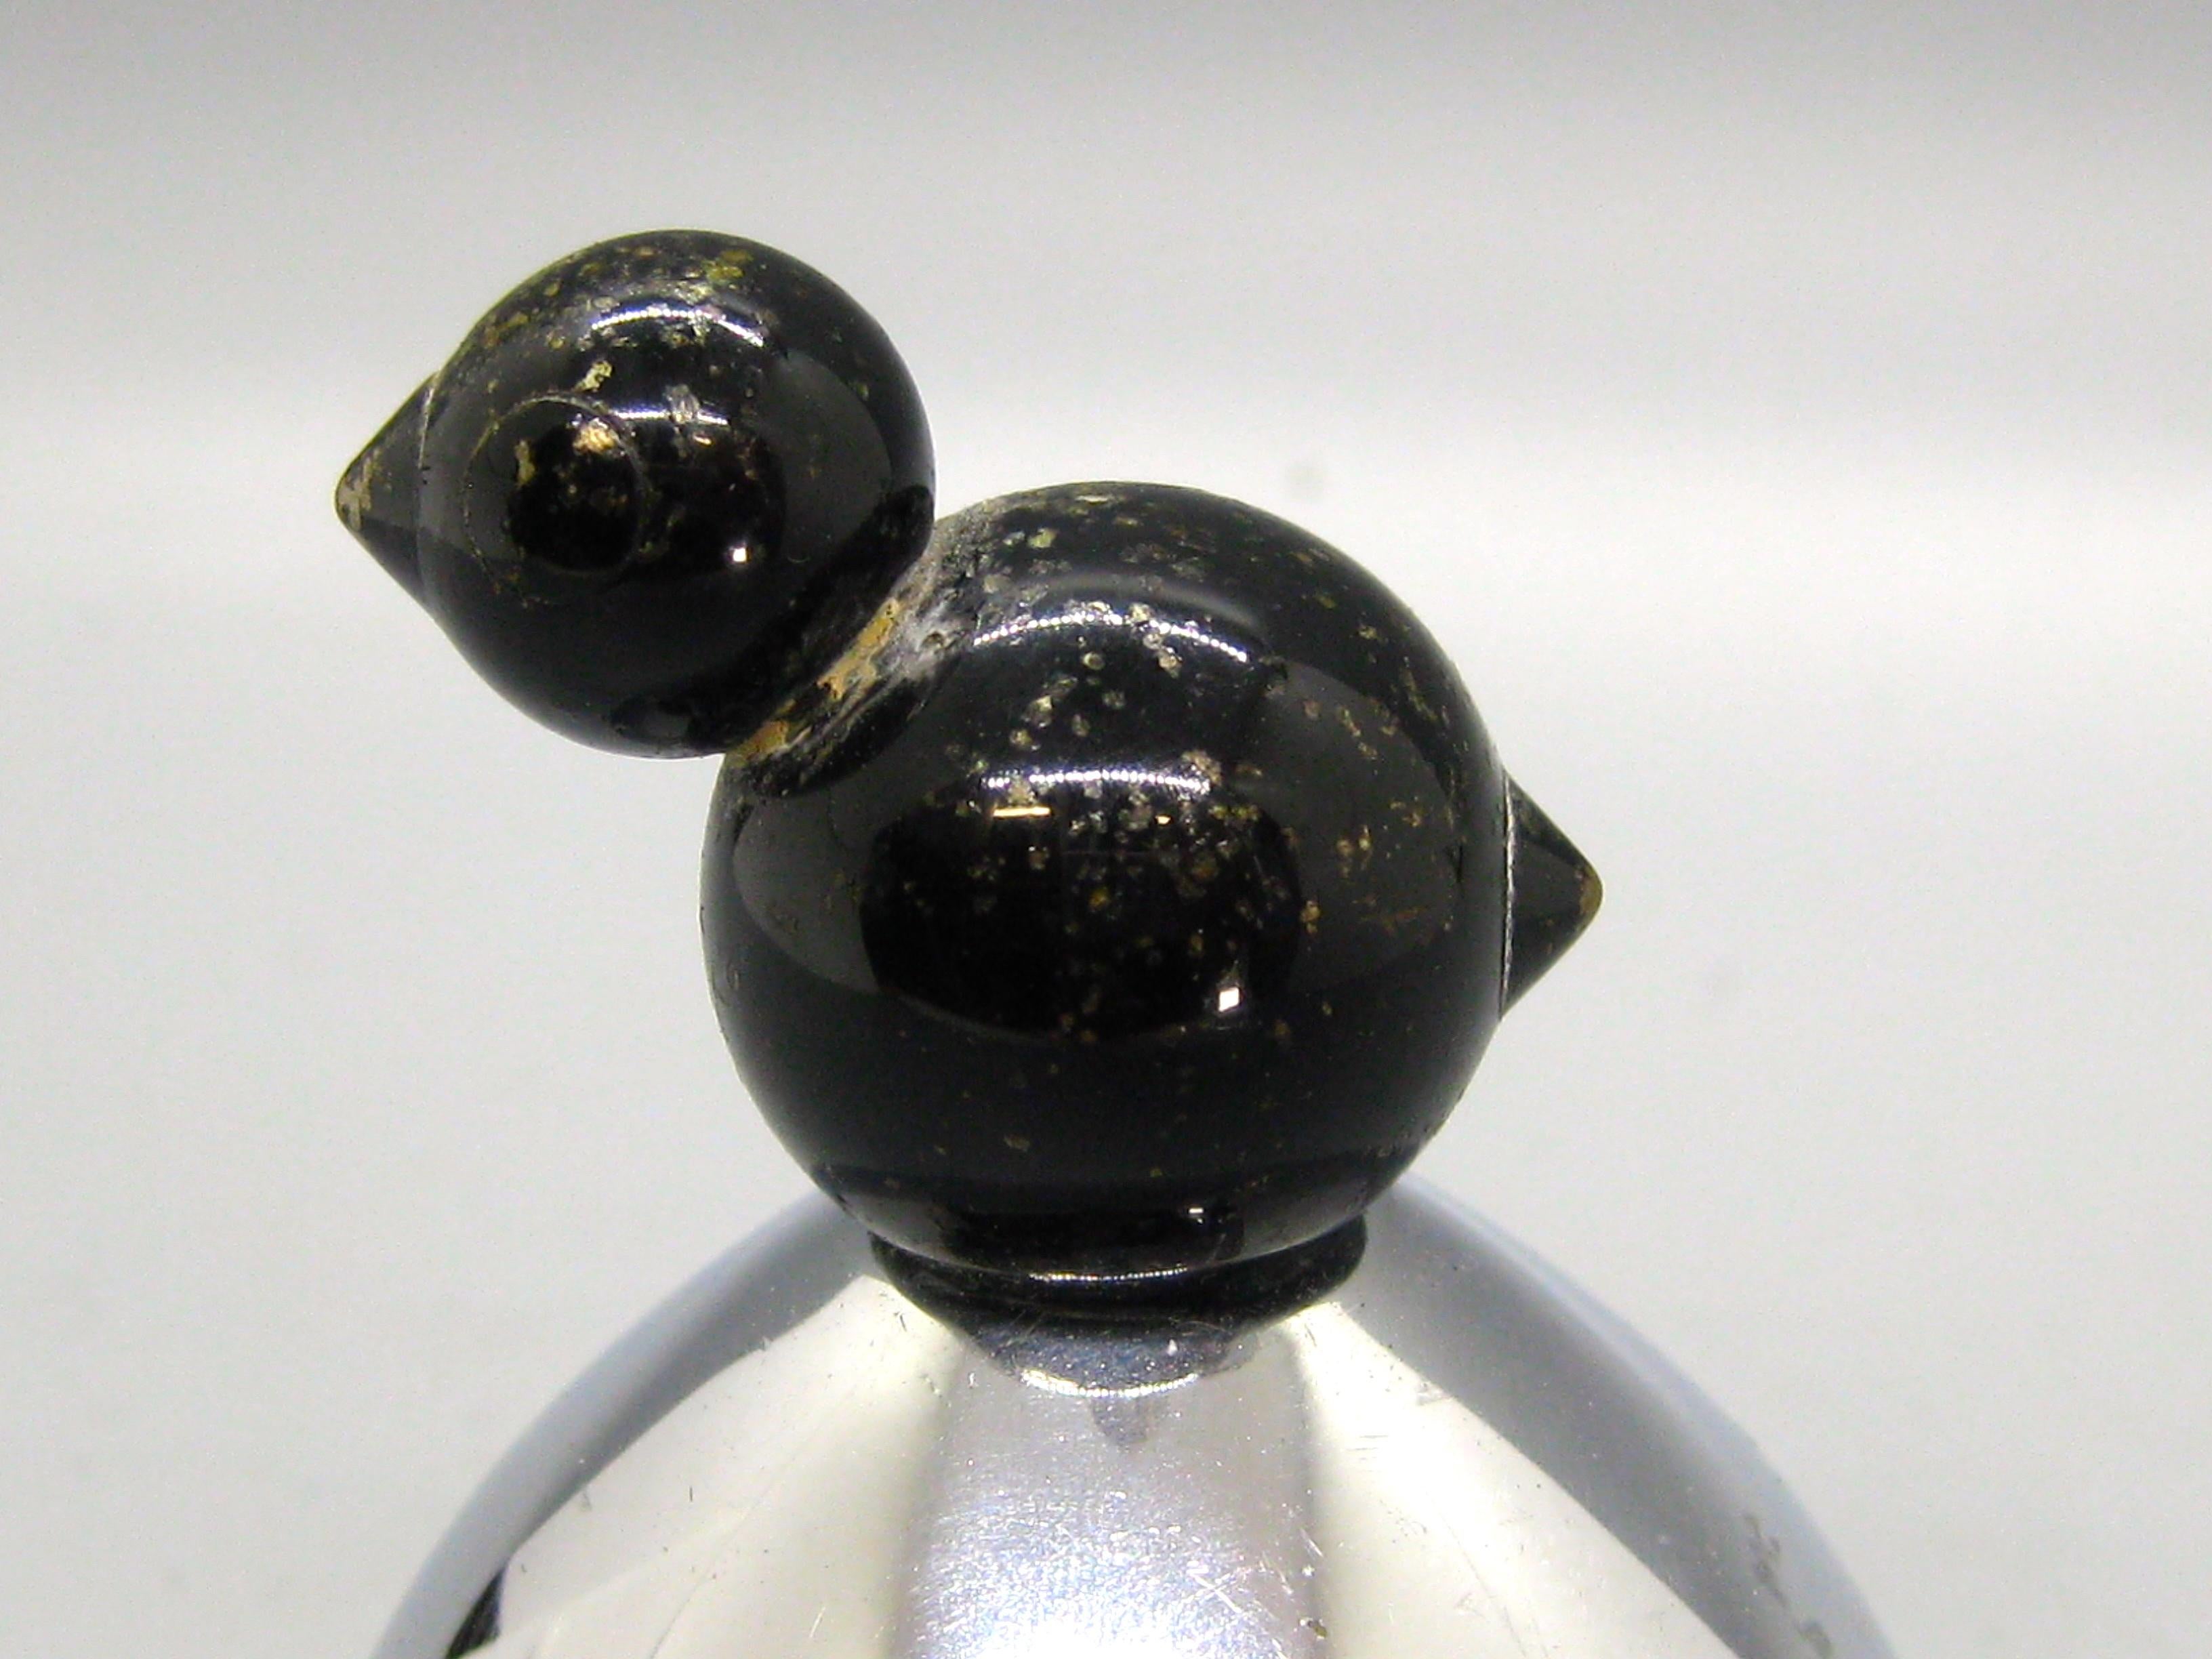 Feine Art Deco Walter Von Nessen entworfen Vogel figurale Essensglocke von Chase gemacht. Die Bess wurde in den 1930er Jahren hergestellt. Hergestellt aus verchromtem Messing. Der Vogel ist aus Messing mit einer schwarzen Emaille auf der Oberfläche.